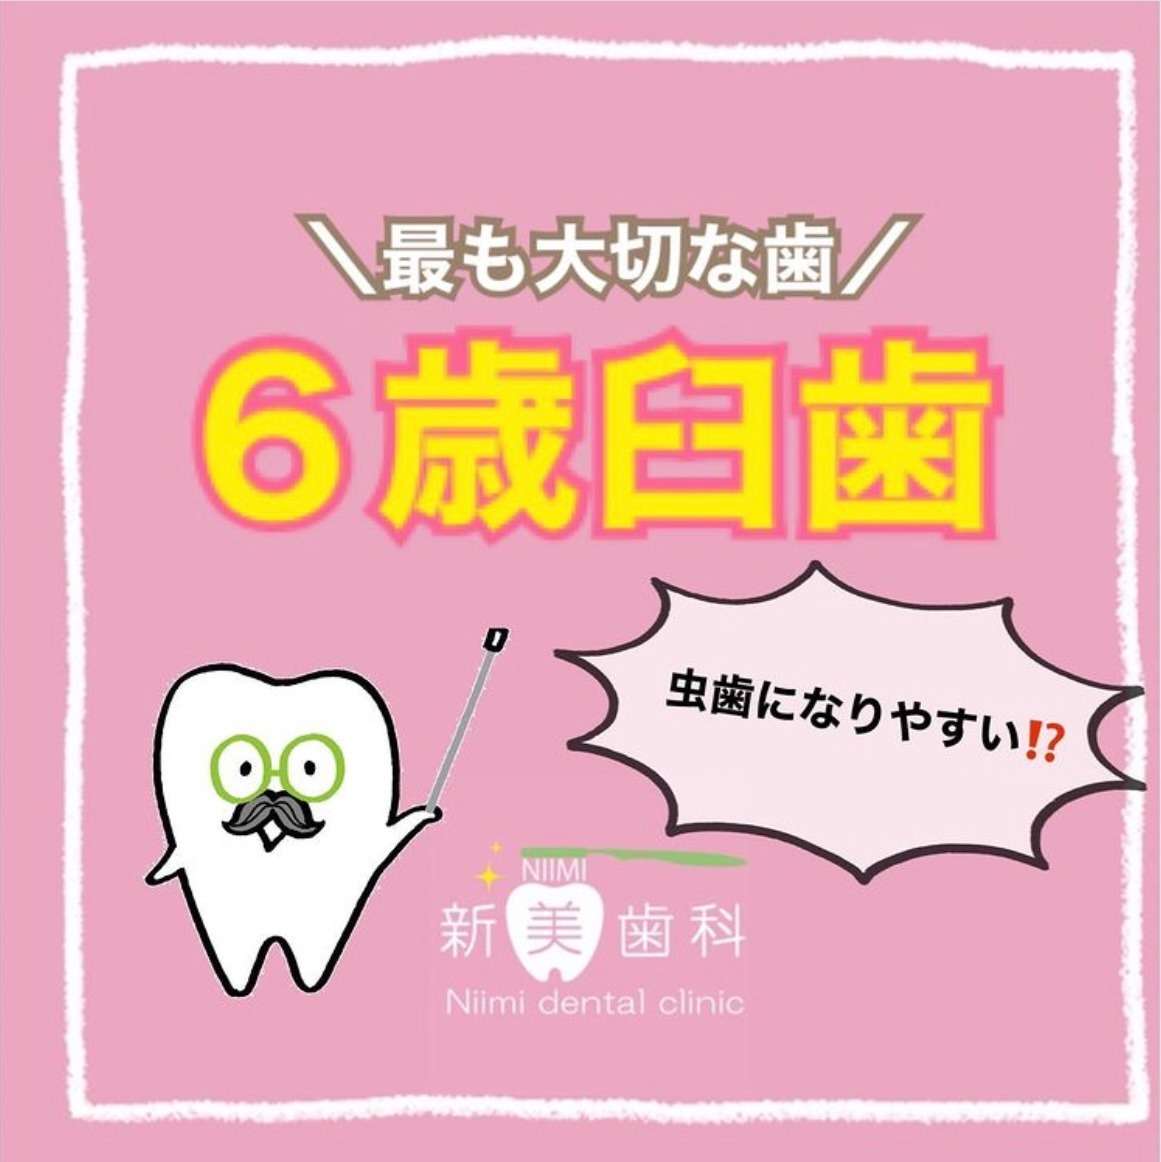 最も大切な歯〈6歳臼歯〉